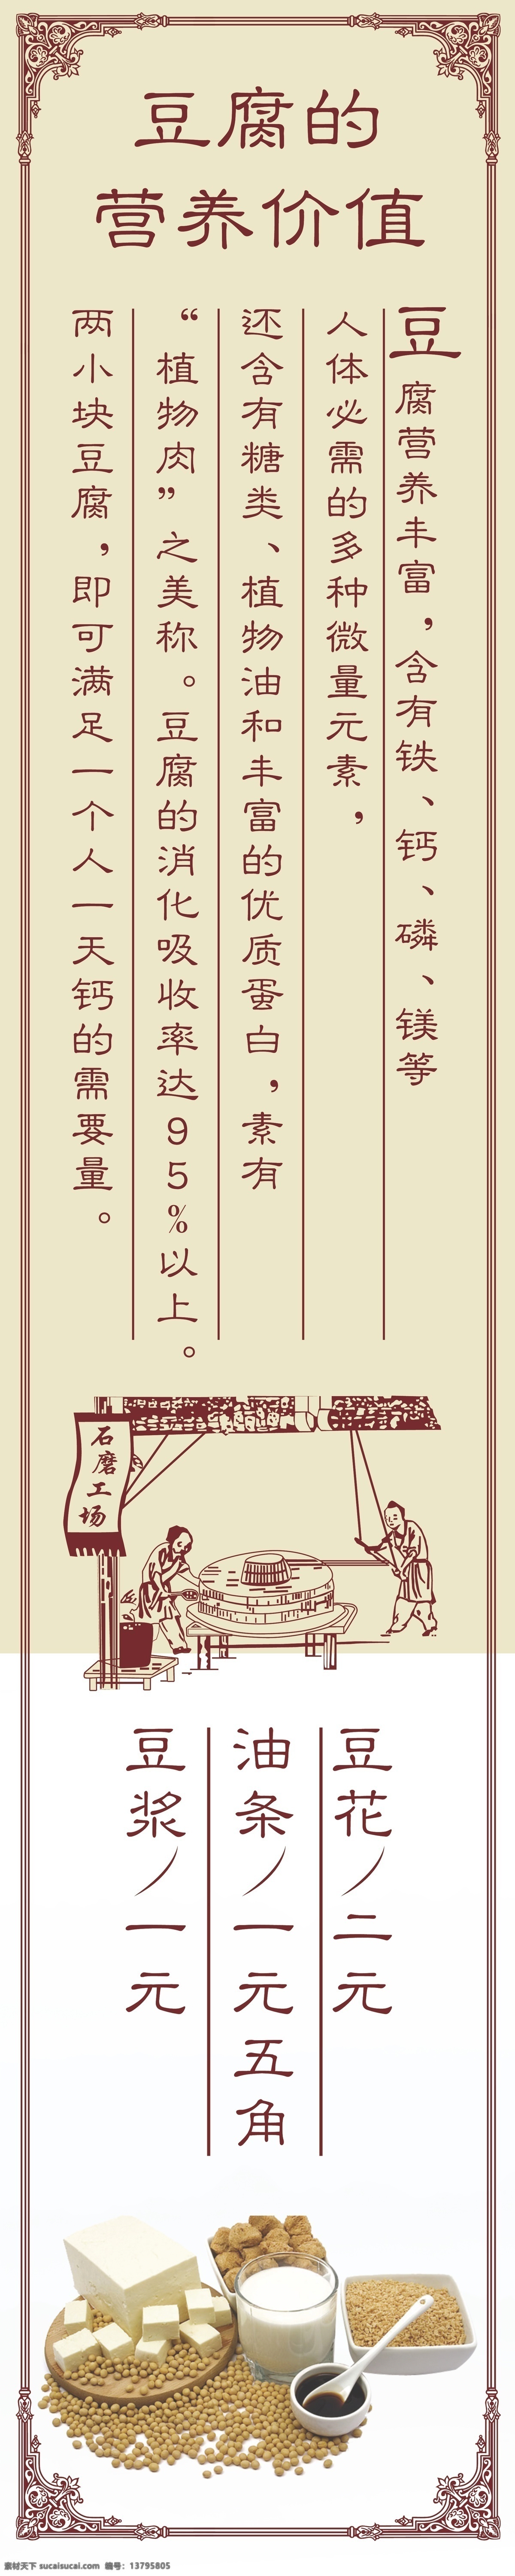 传统 客家 豆腐 宣传海报 豆制品海报 传统豆腐 豆制品介绍 古典豆腐海报 豆腐店宣传画